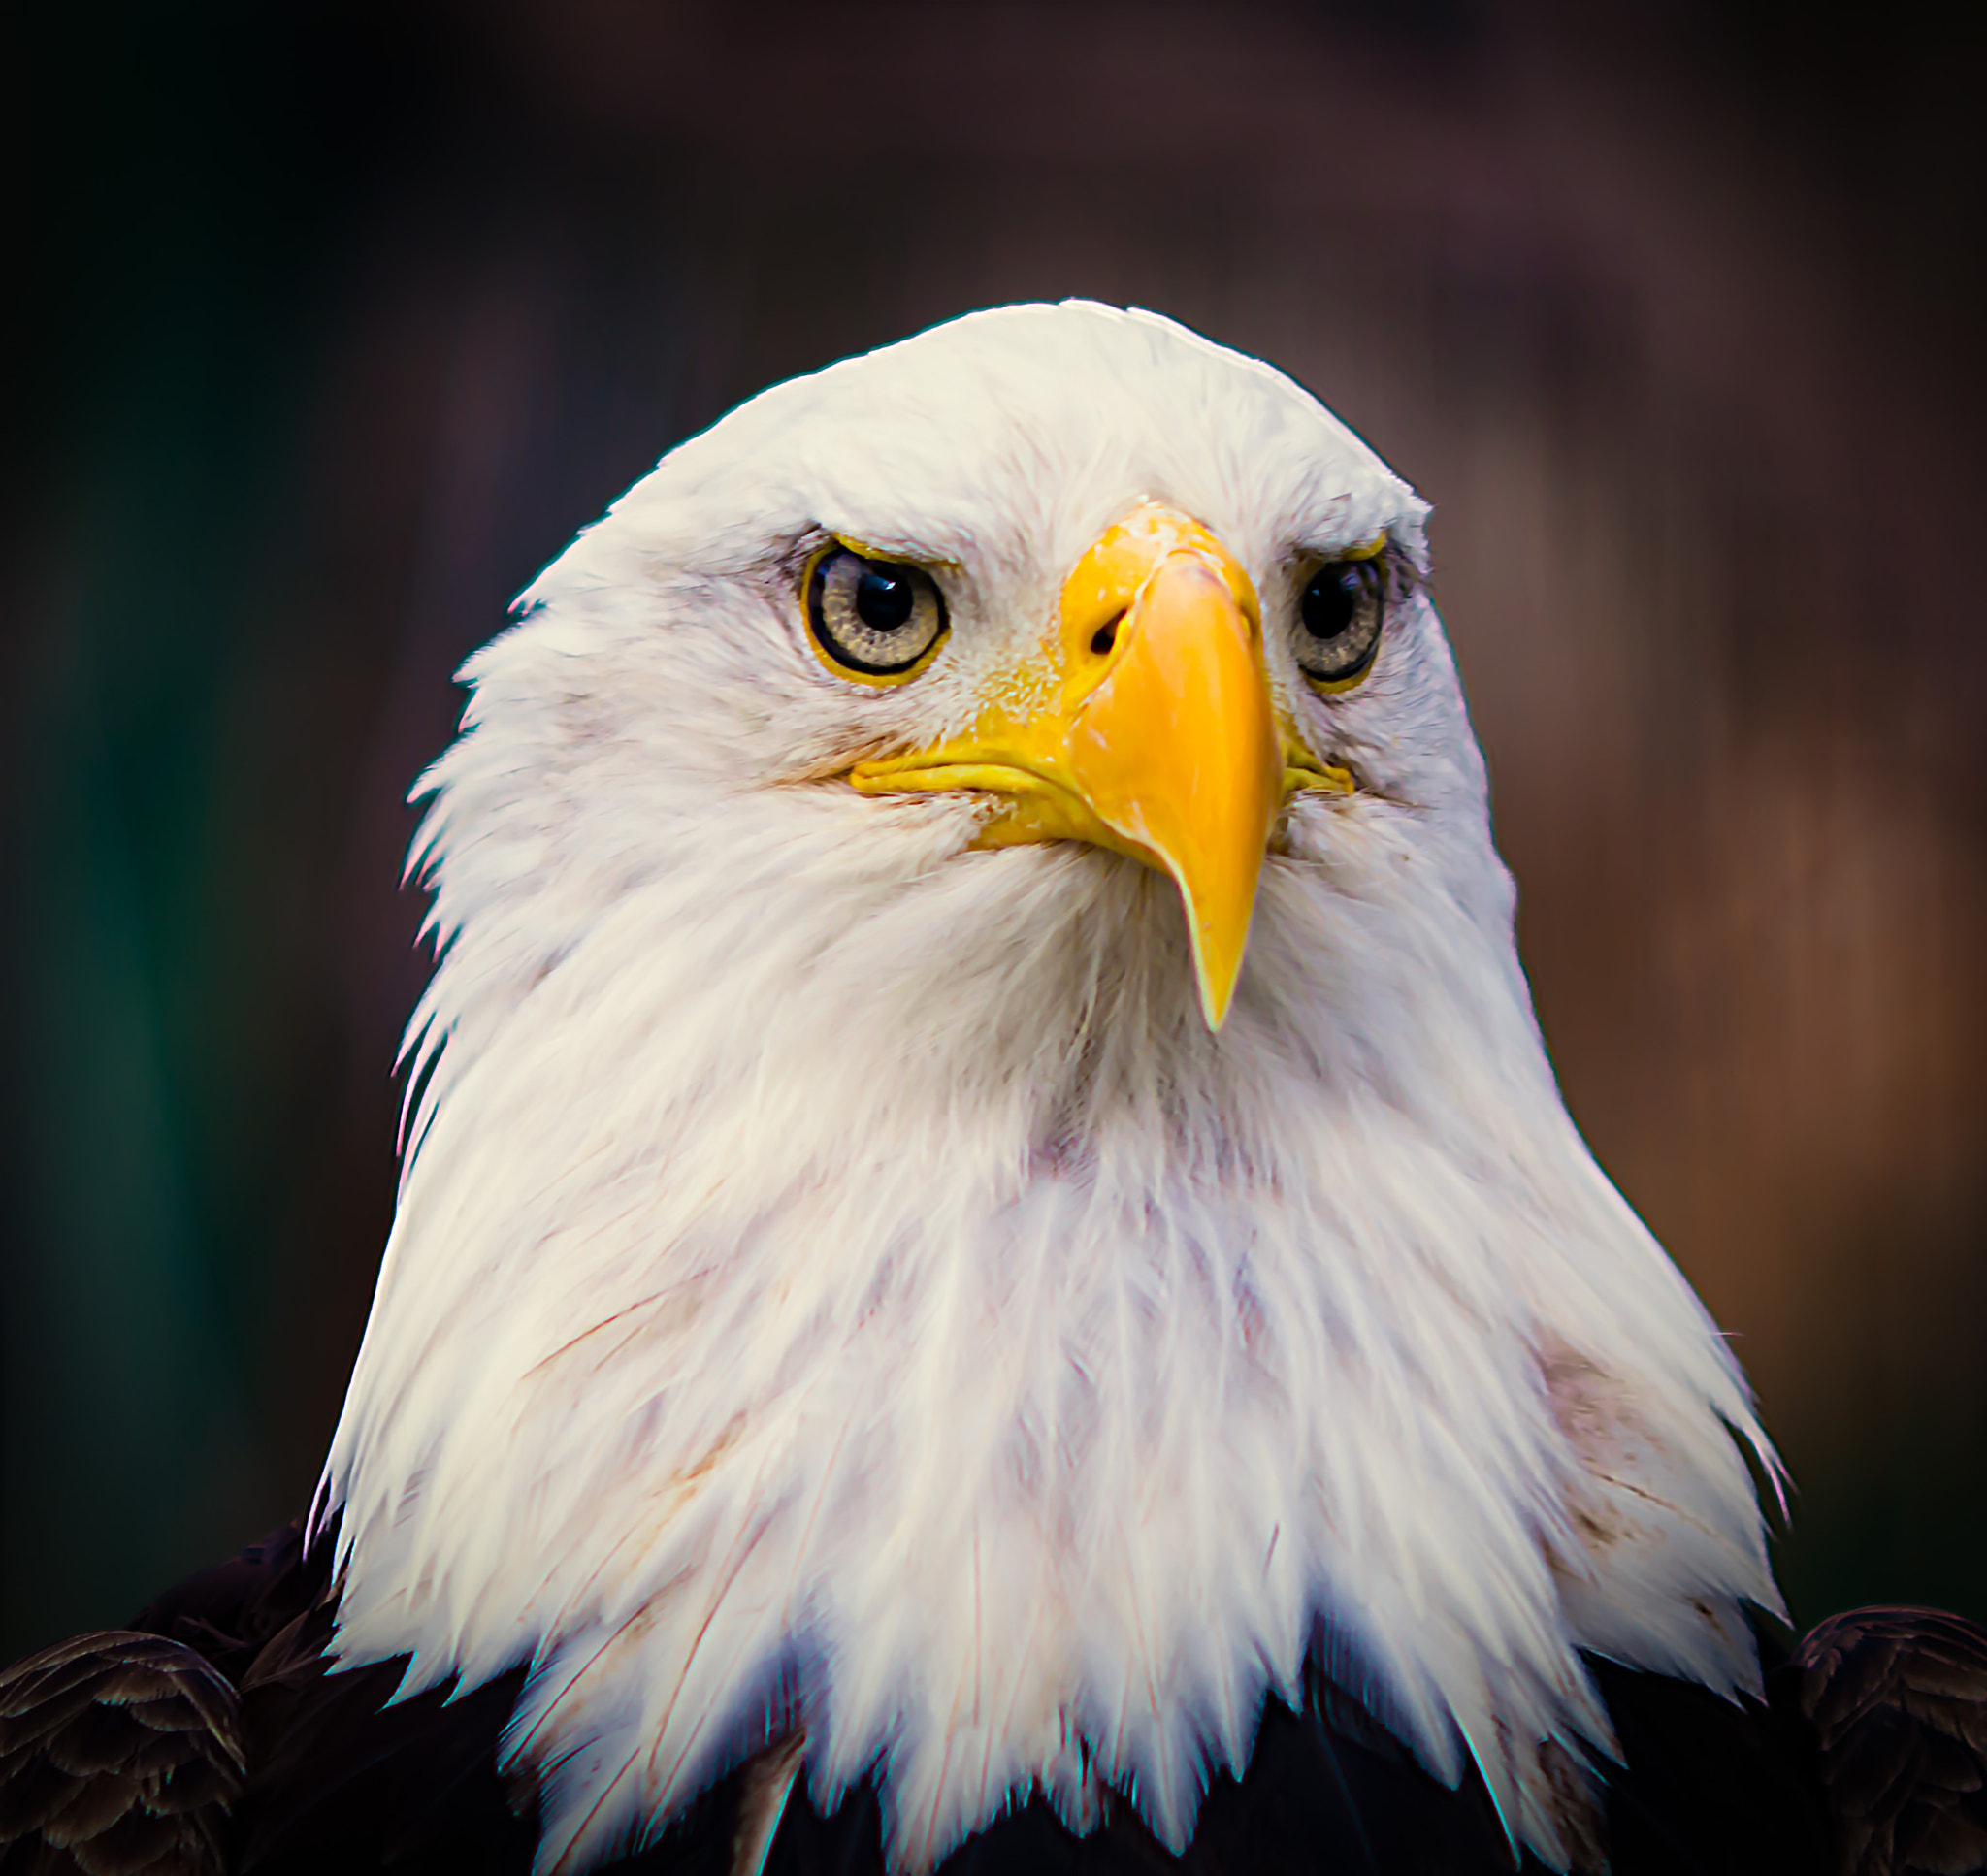 Nikon D800 + AF DC-Nikkor 135mm f/2D sample photo. Bald eagle portrait photography